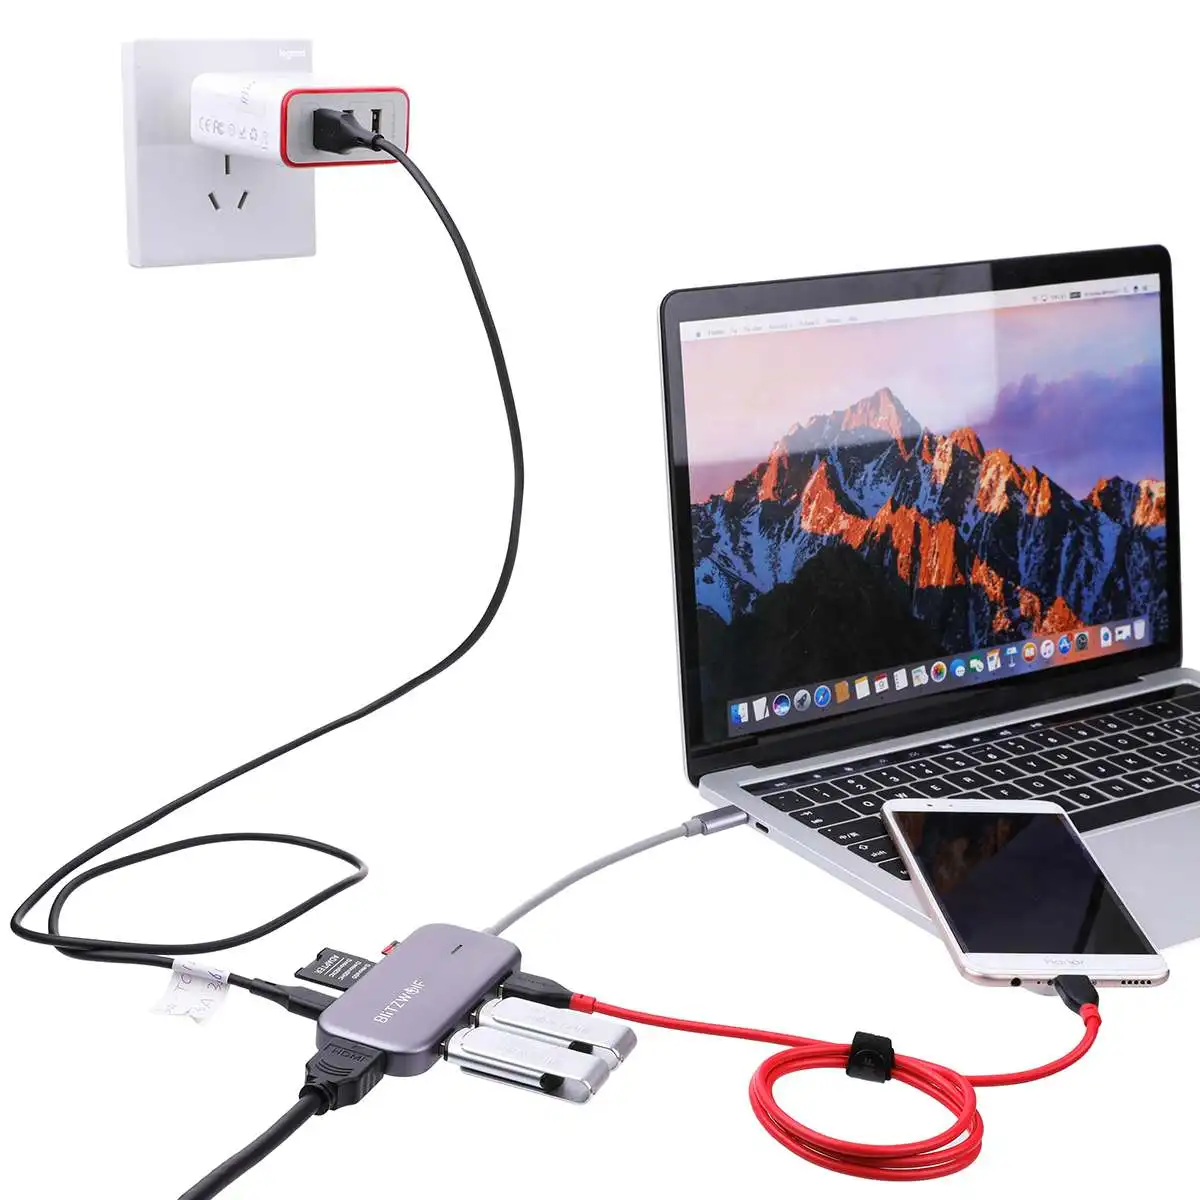 Adaptateur Blitzwolf BW-TH5 7-en-1 USB-C avec HDMI 4K, 3 USB 3.0, Lecteur  de Cartes SD/TF 